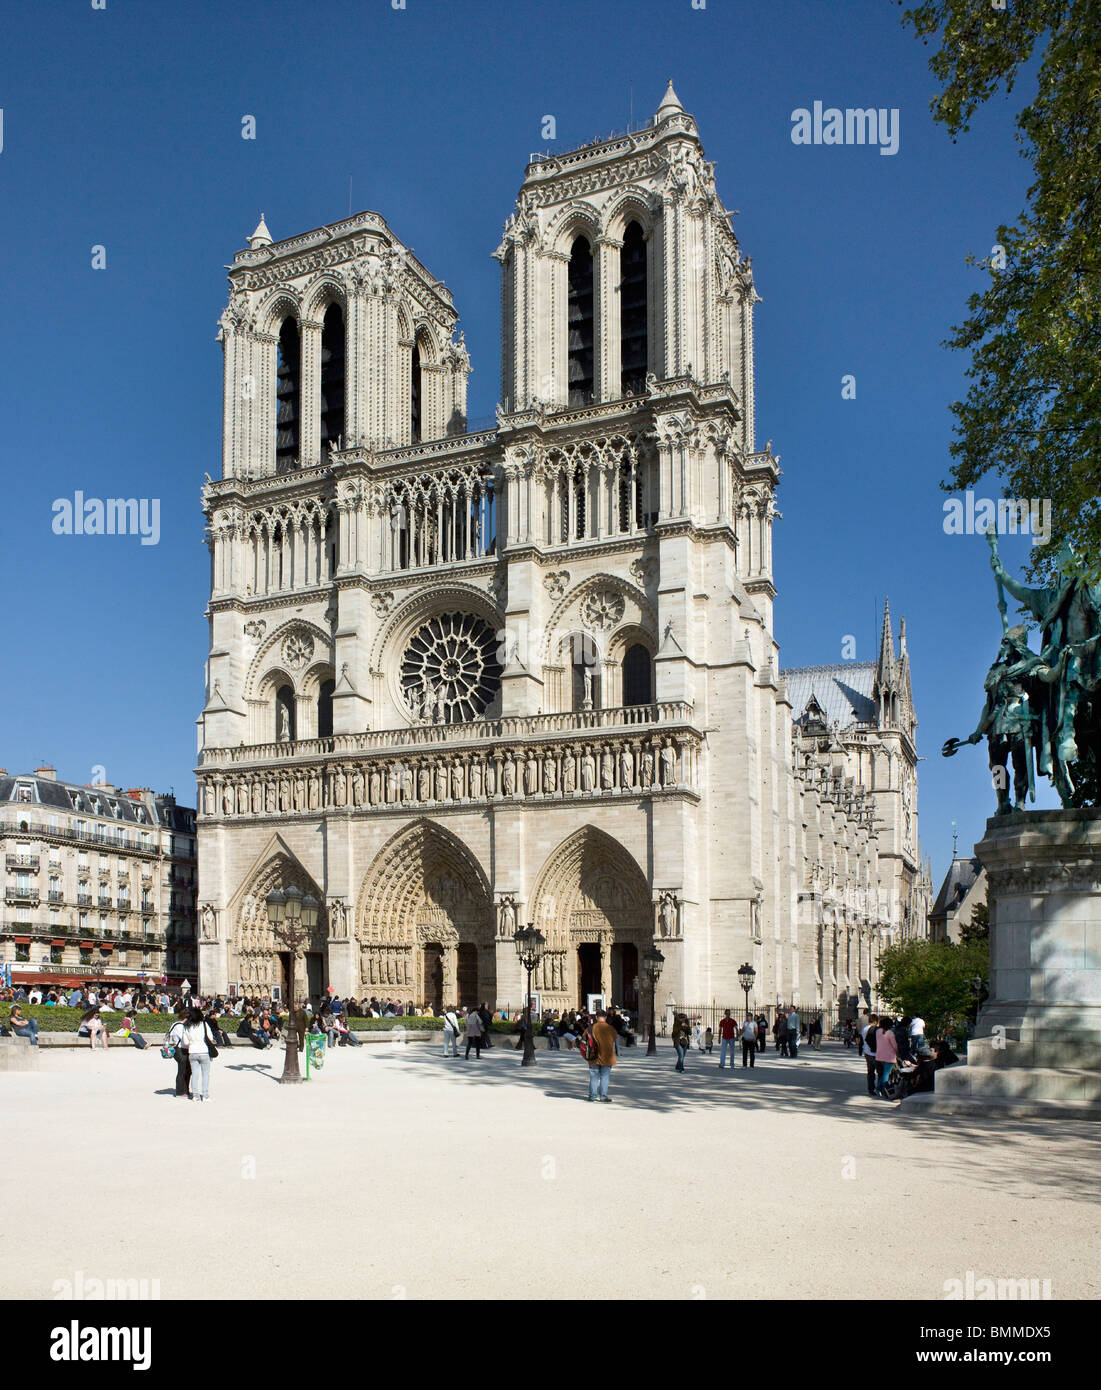 La catedral de Notre Dame, París, West front con las torres gemelas. 1200-1225, de estilo gótico. Foto de stock